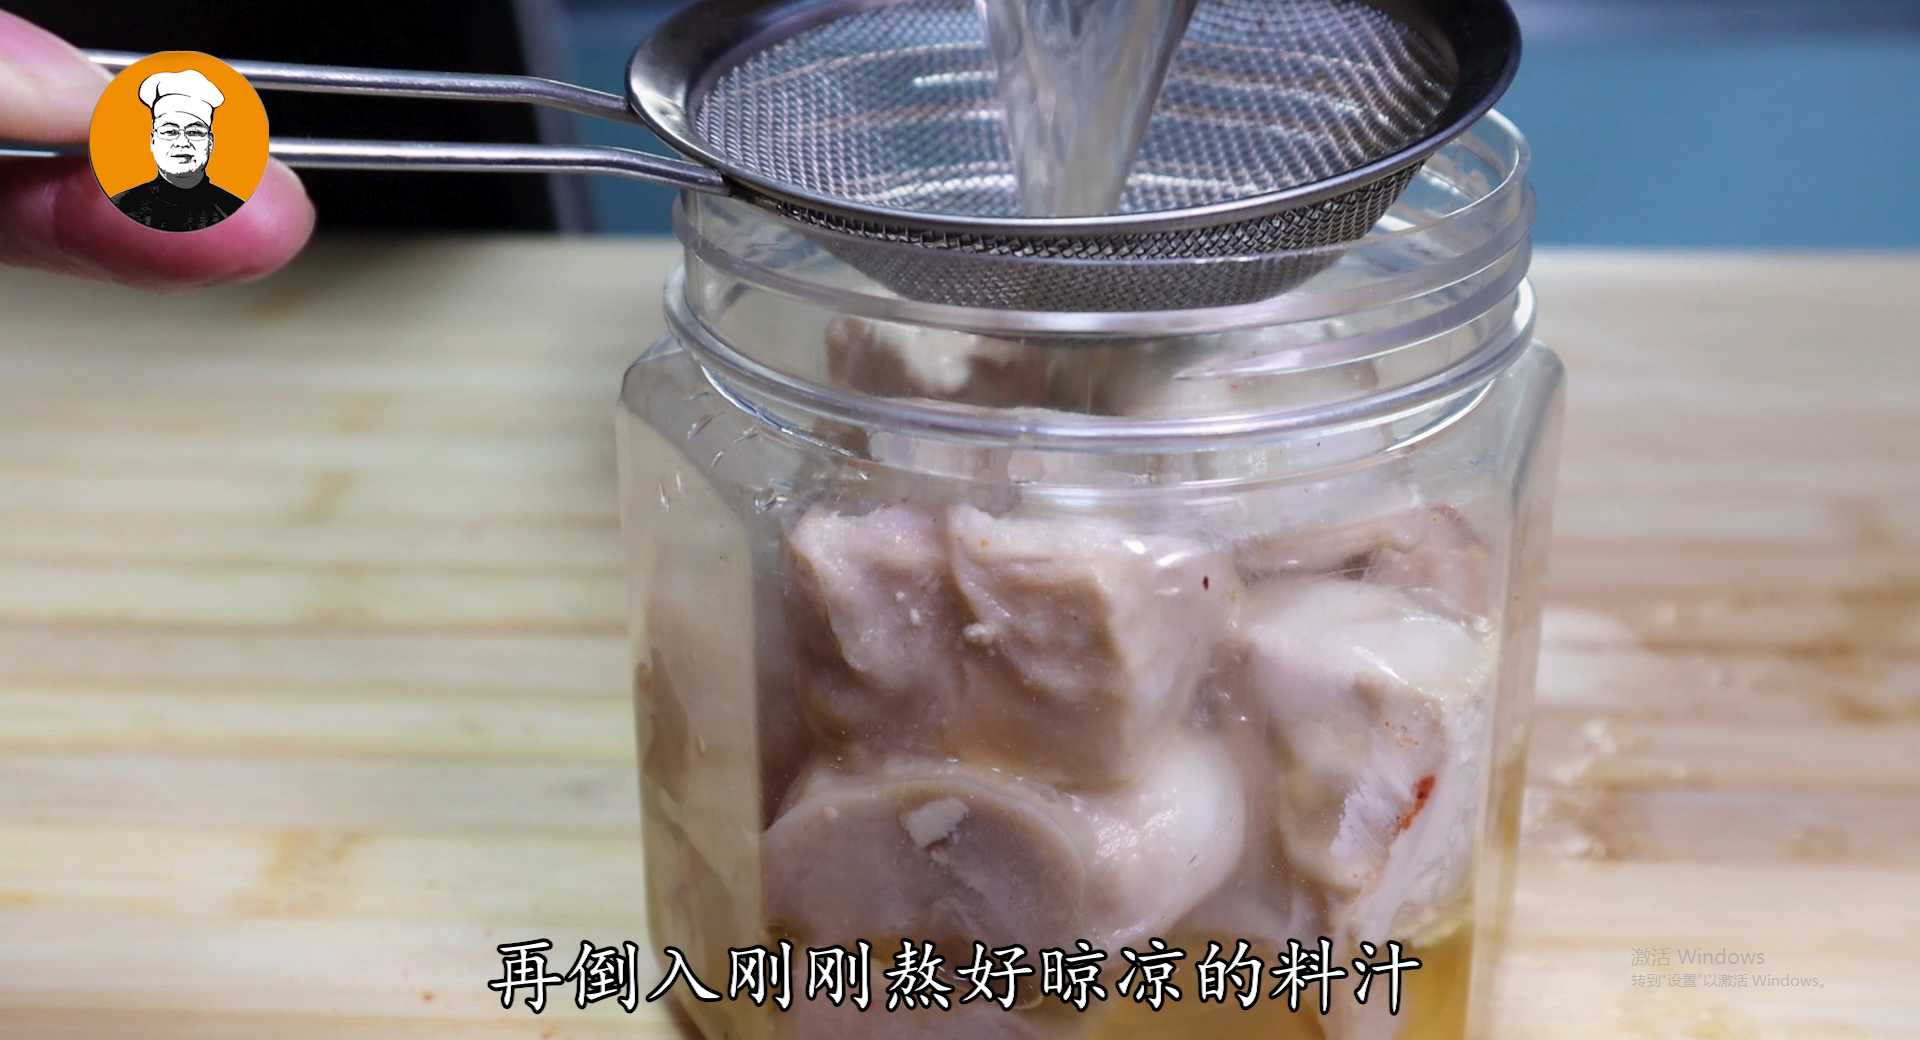 自制豆腐乳的做法和配方告诉你，香辣下饭，比买的还好吃